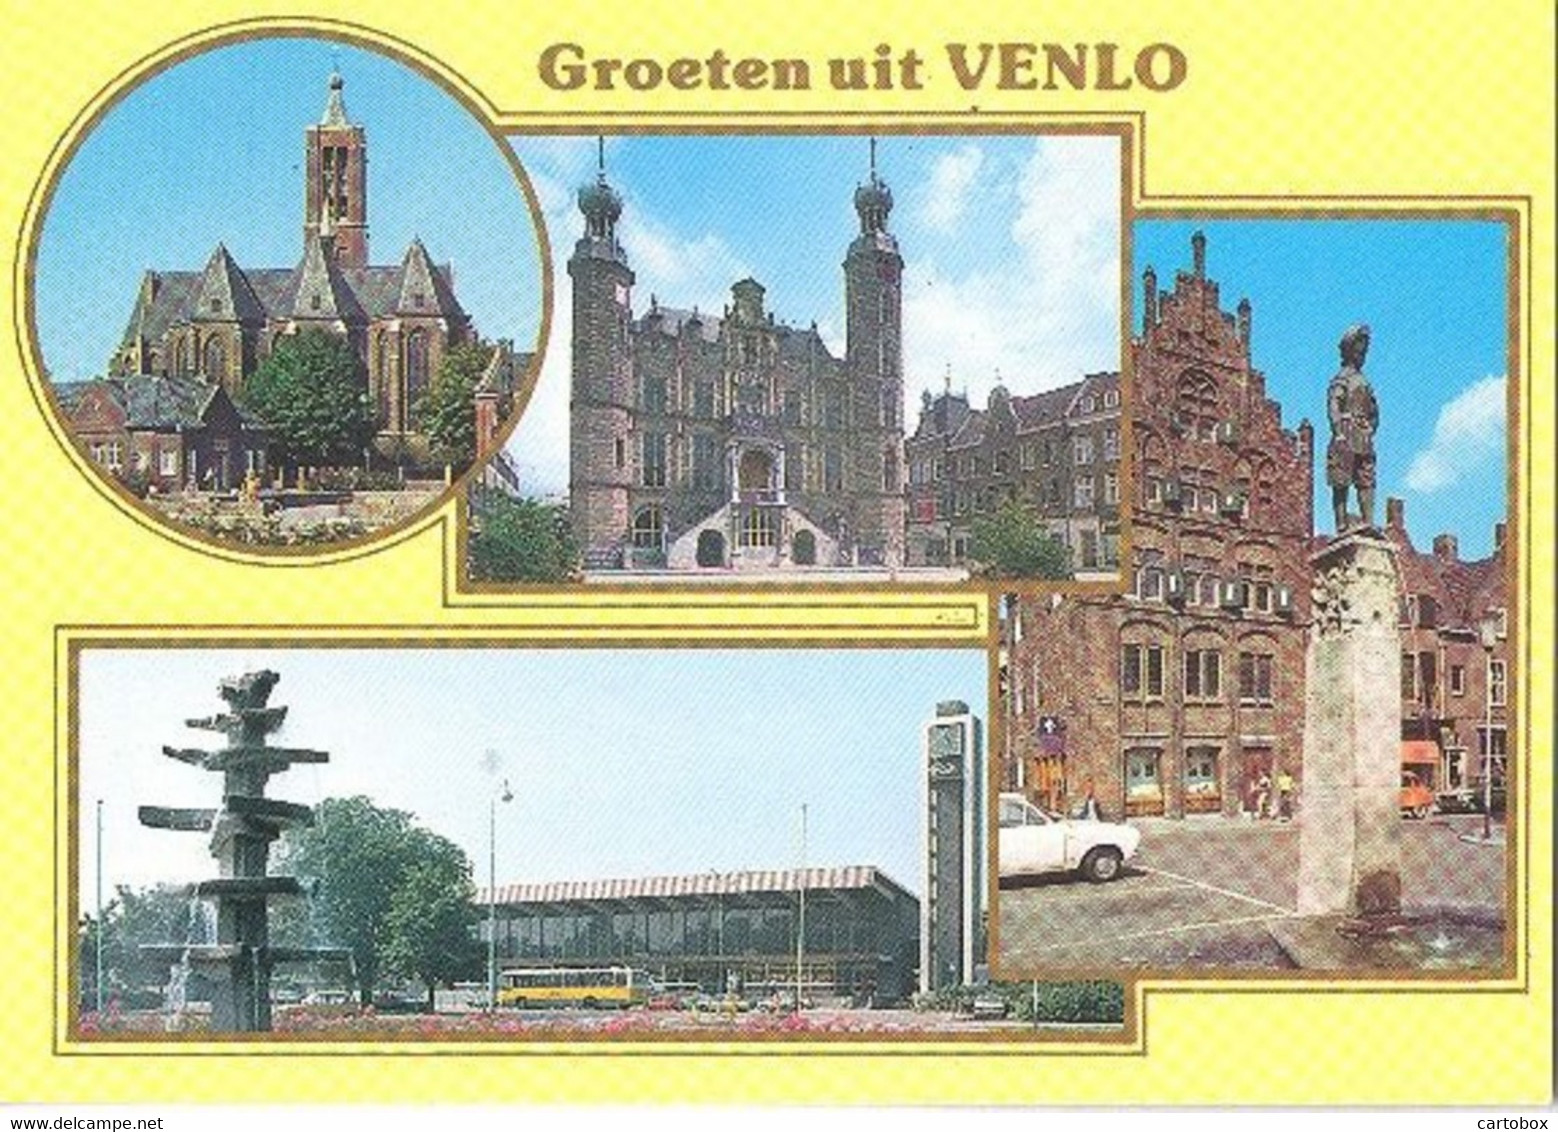 Venlo   (met Stempel Filatelieloket) (Een Raster Op De Kaart Is Veroorzaakt Door Het Scannen) - Venlo